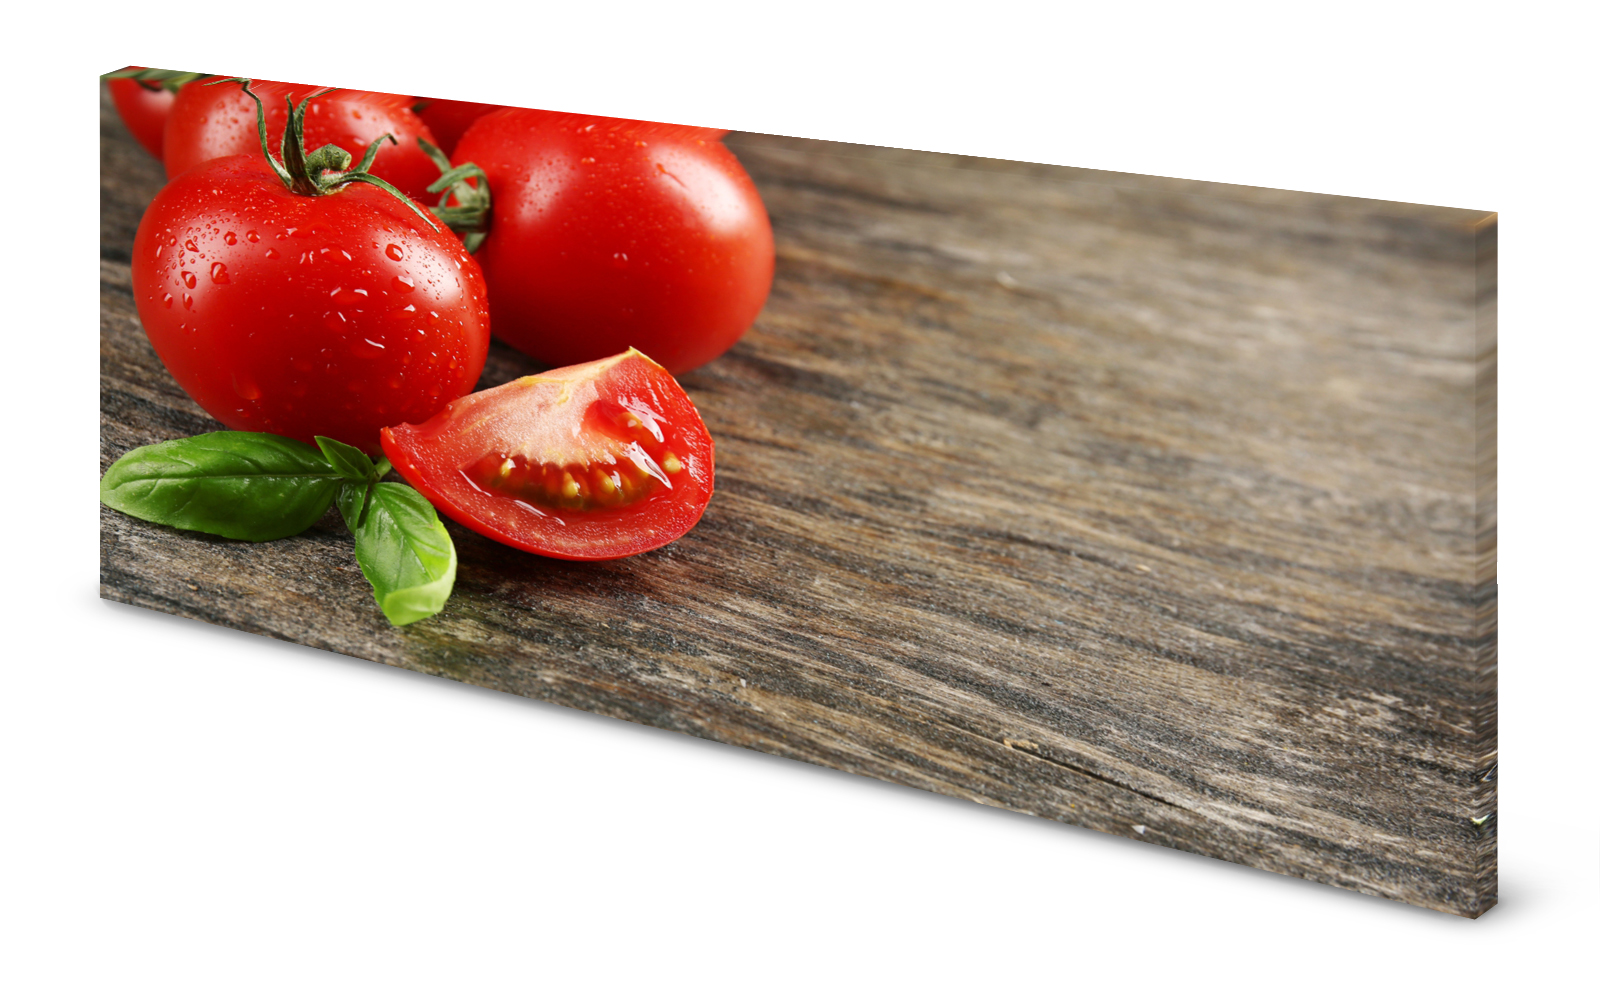 Magnettafel Pinnwand Bild Küche Holz Holzoptik Tomate gekantet